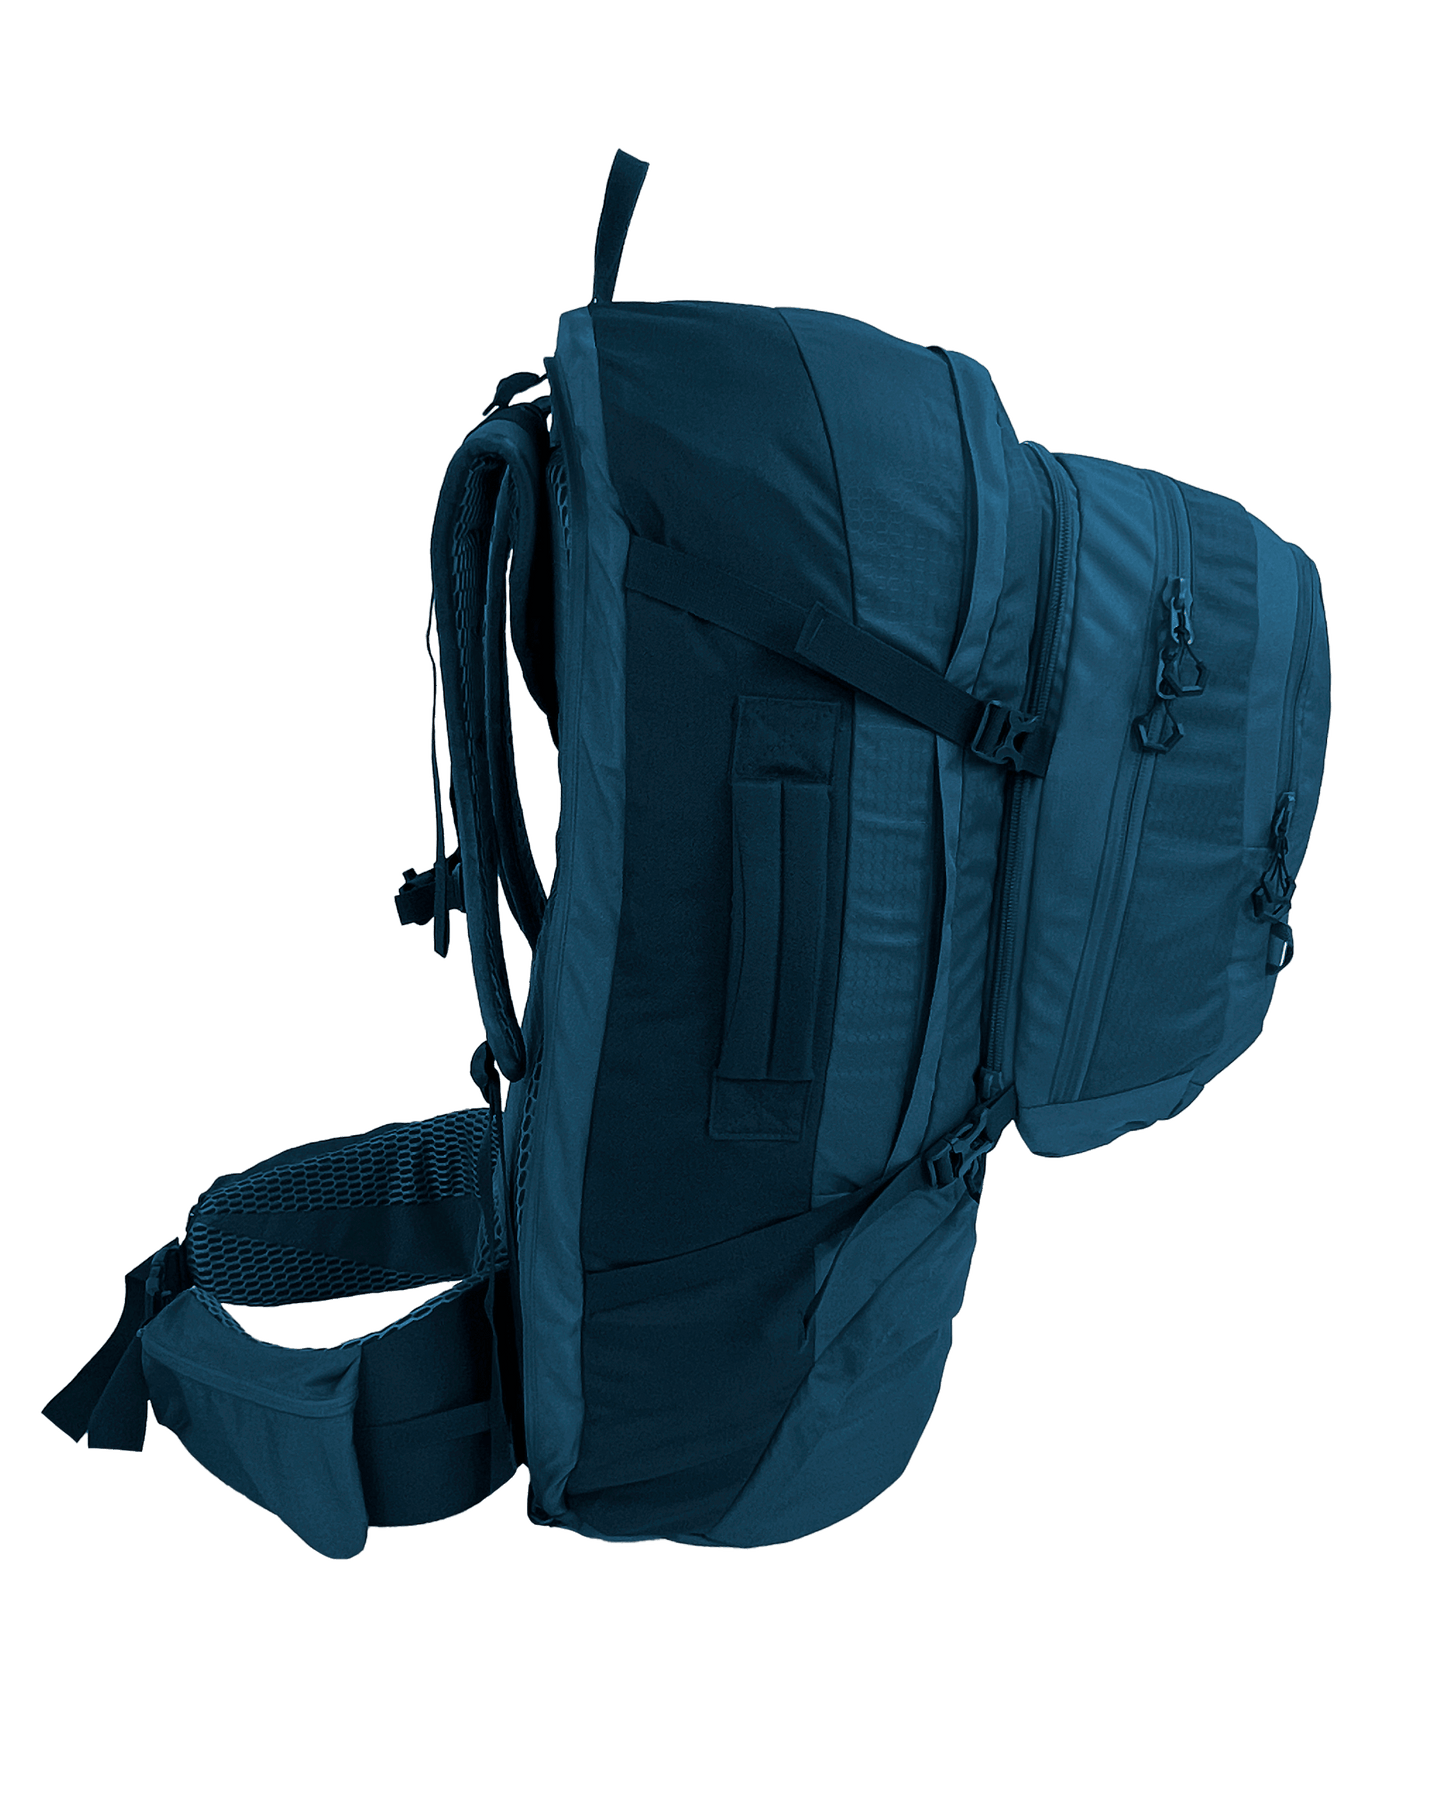 
                  
                    Fulham II 80 Travel Backpack
                  
                